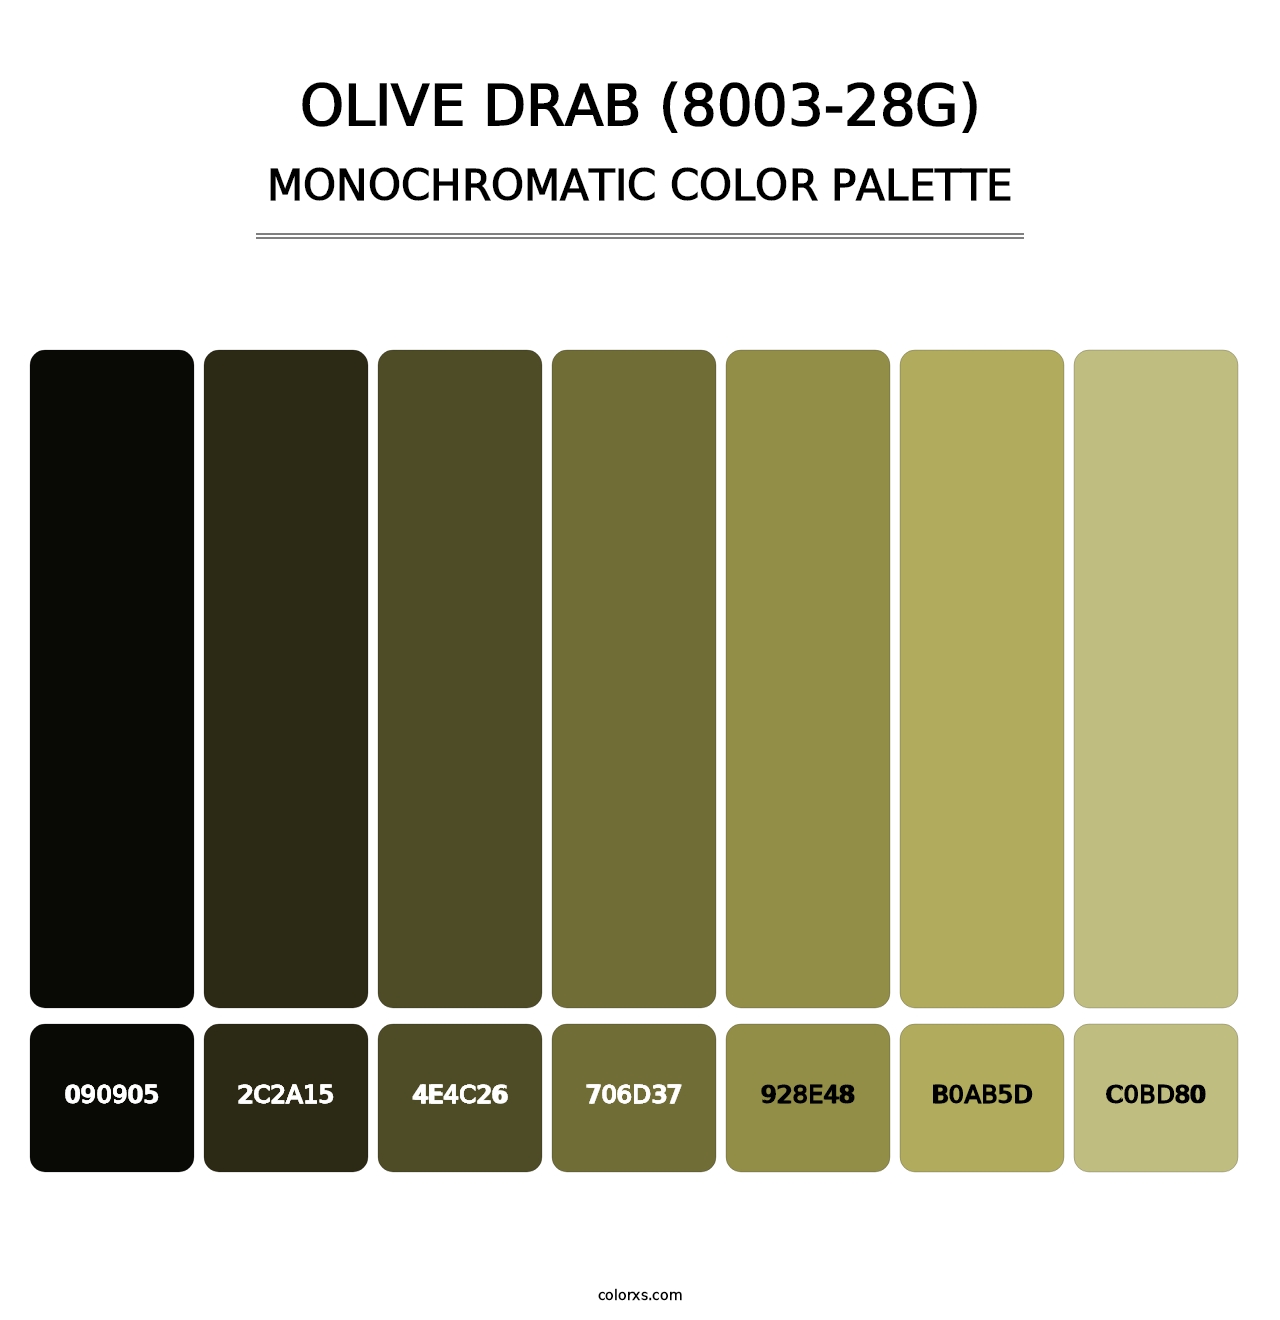 Olive Drab (8003-28G) - Monochromatic Color Palette